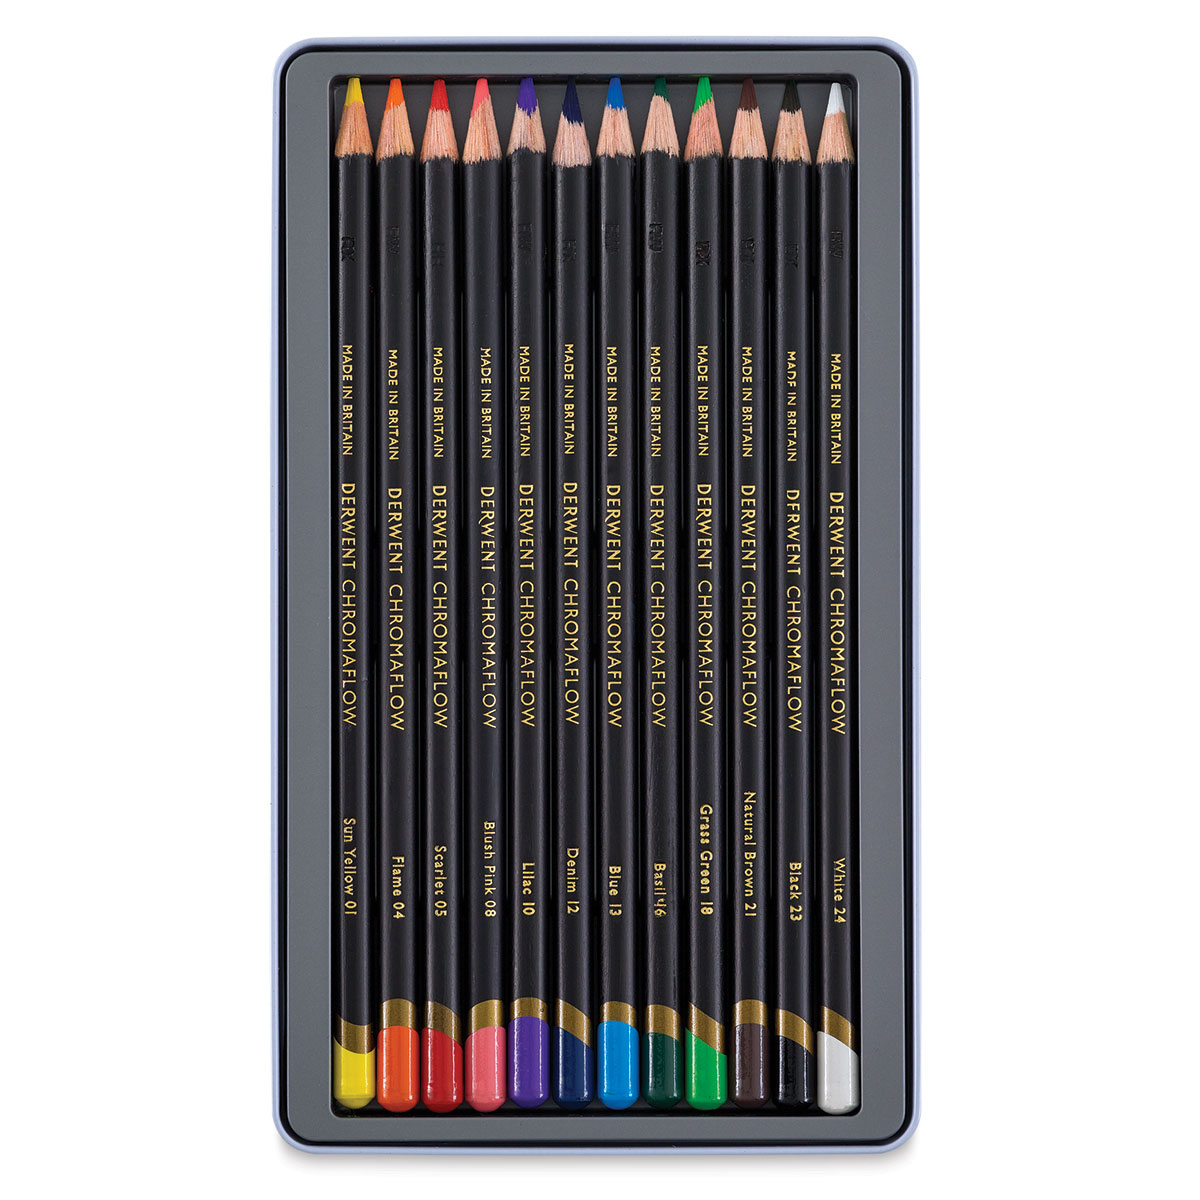 Derwent Chromaflow Colored Pencil Sets | BLICK Art Materials